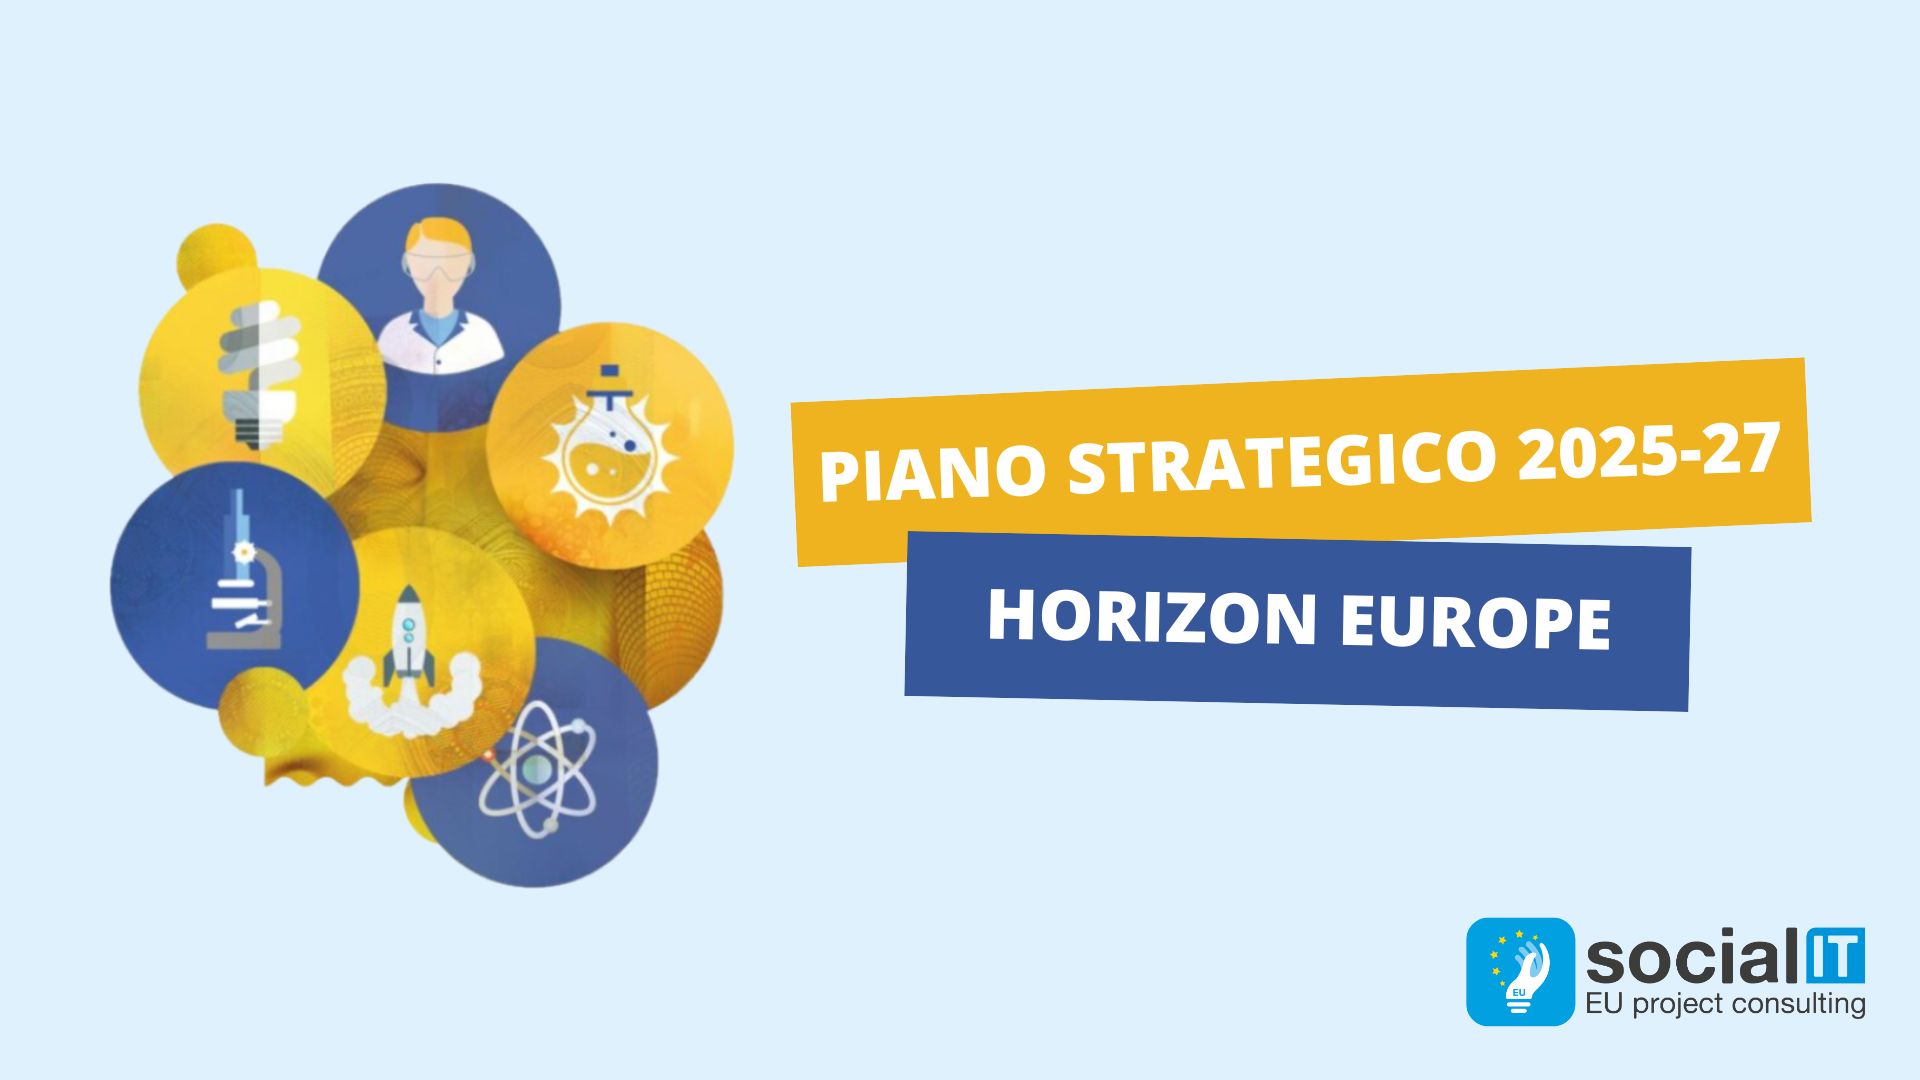 Horizon Europe strategic plan 2025/2027